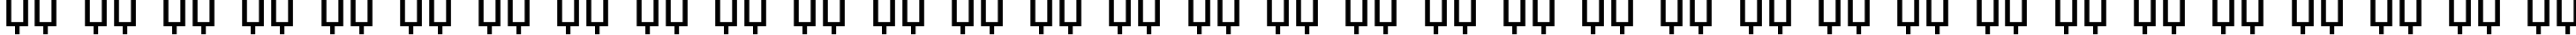 Пример написания русского алфавита шрифтом TextBook